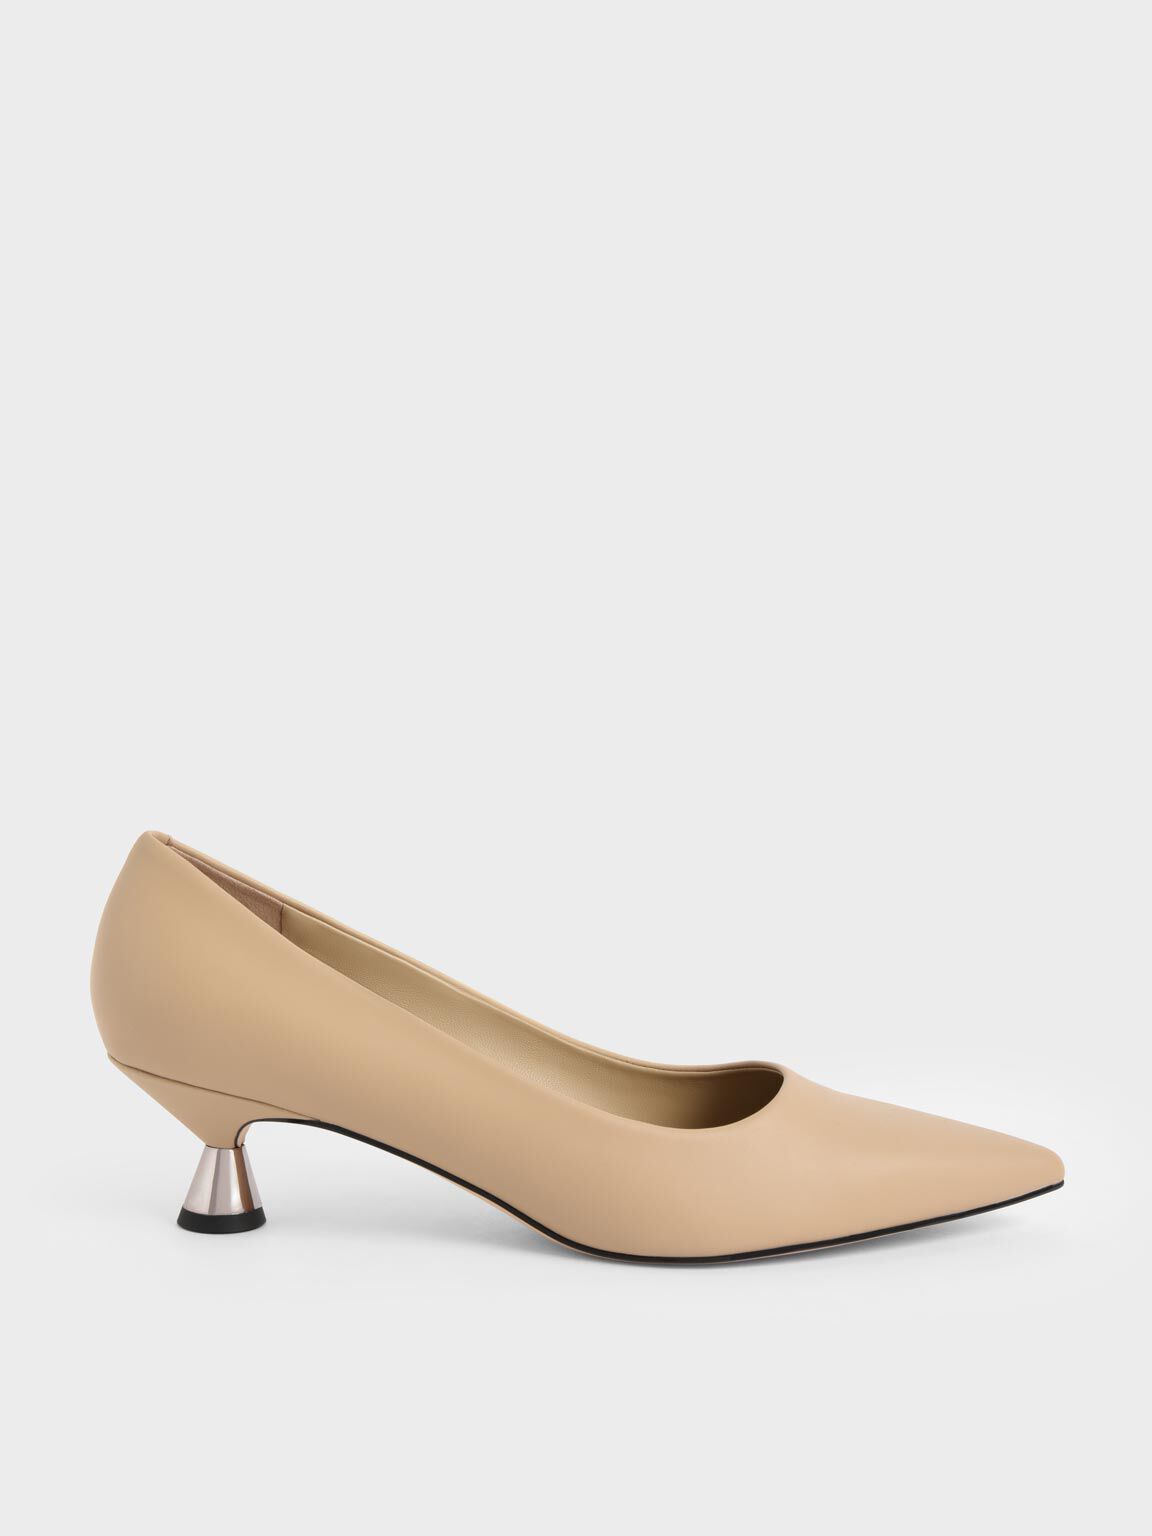 Catwalk Women's Gold Fashion Sandals - 9 UK/India (41 EU)(2353XX-9) :  Amazon.in: Shoes & Handbags